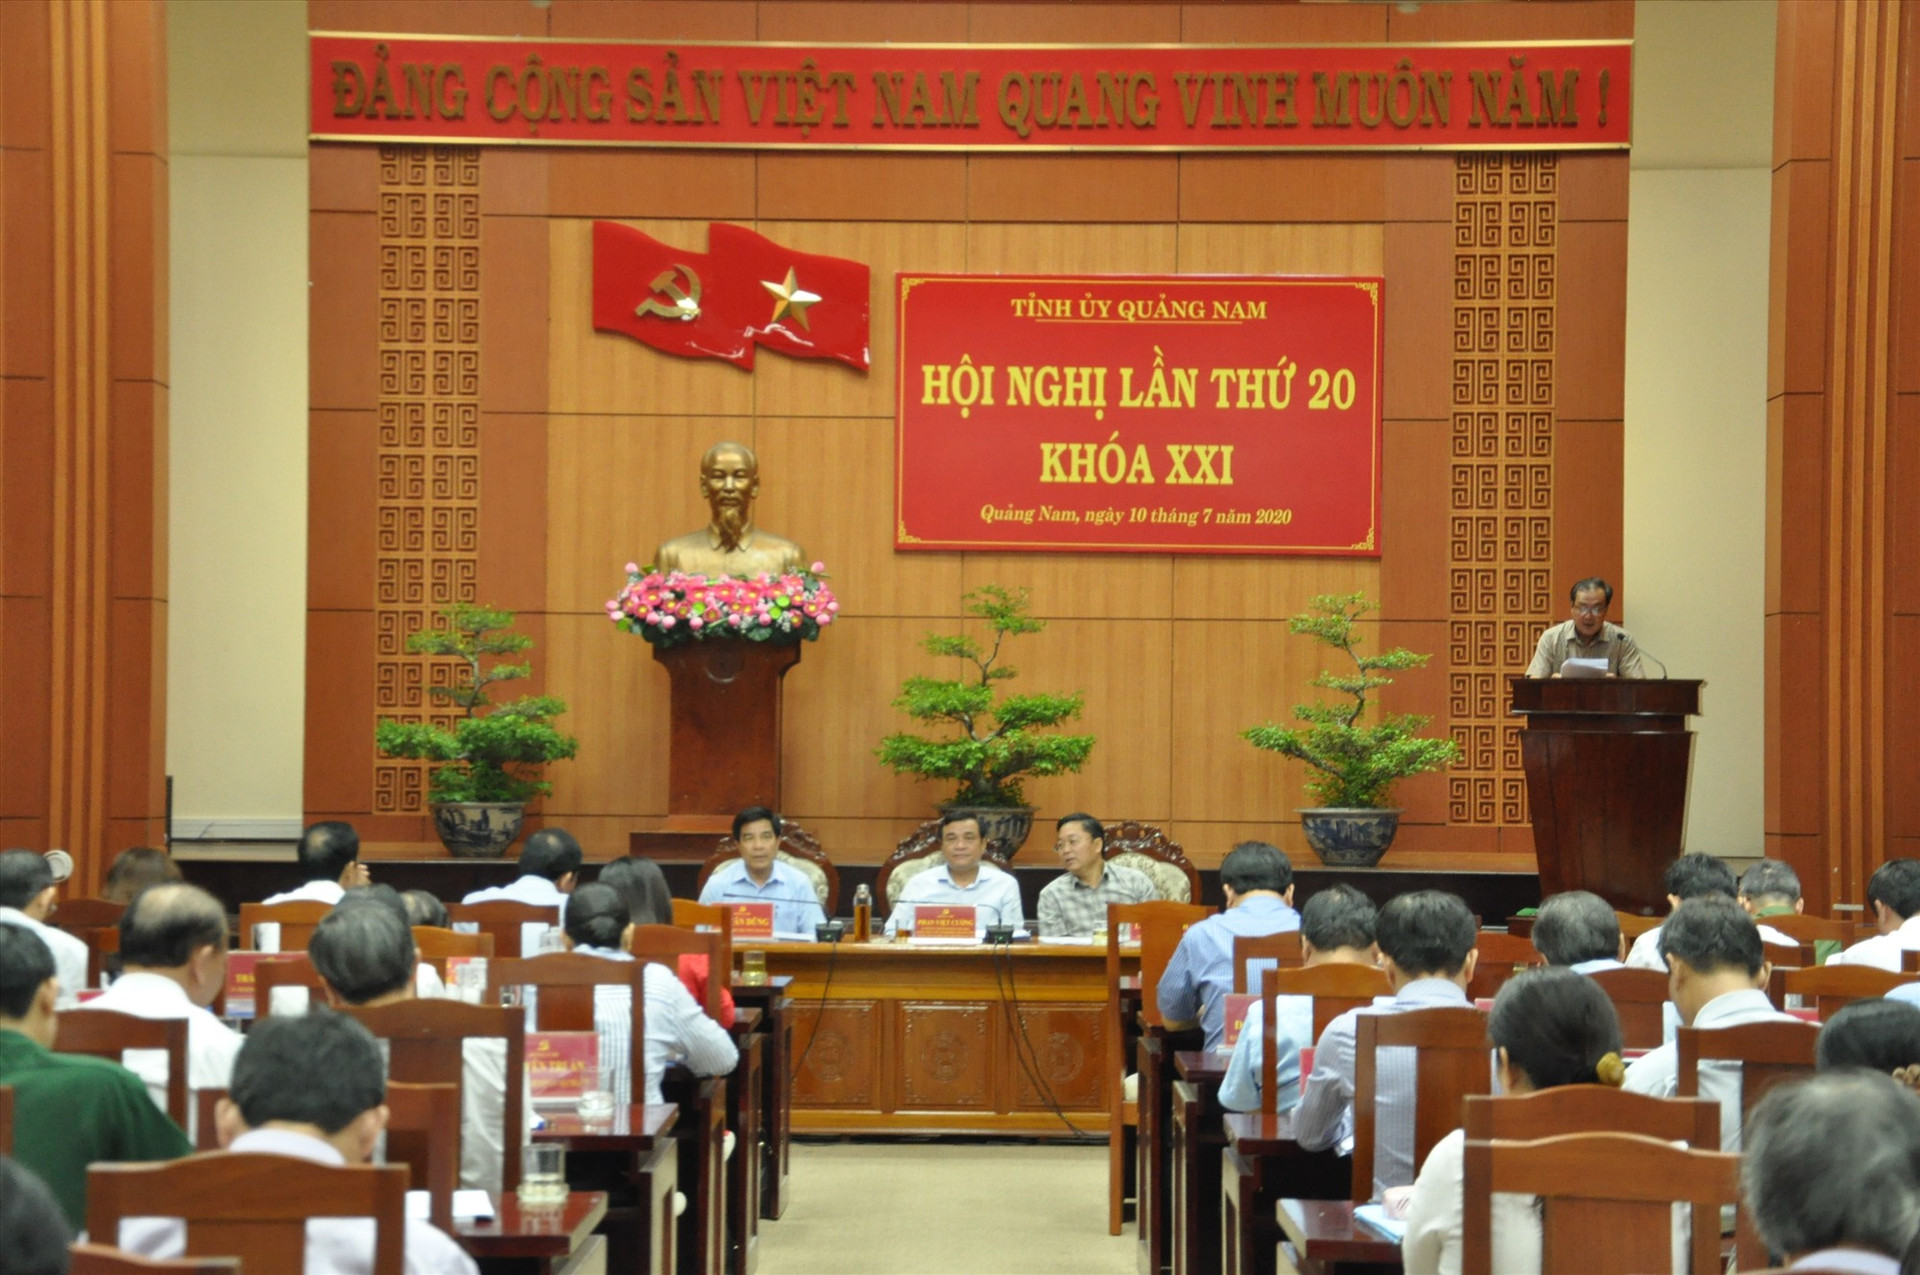 Hội nghị đánh giá kinh tế Quảng Nam gặp nhiều khó khăn trong 6 tháng đầu năm 2020. Ảnh: X.P